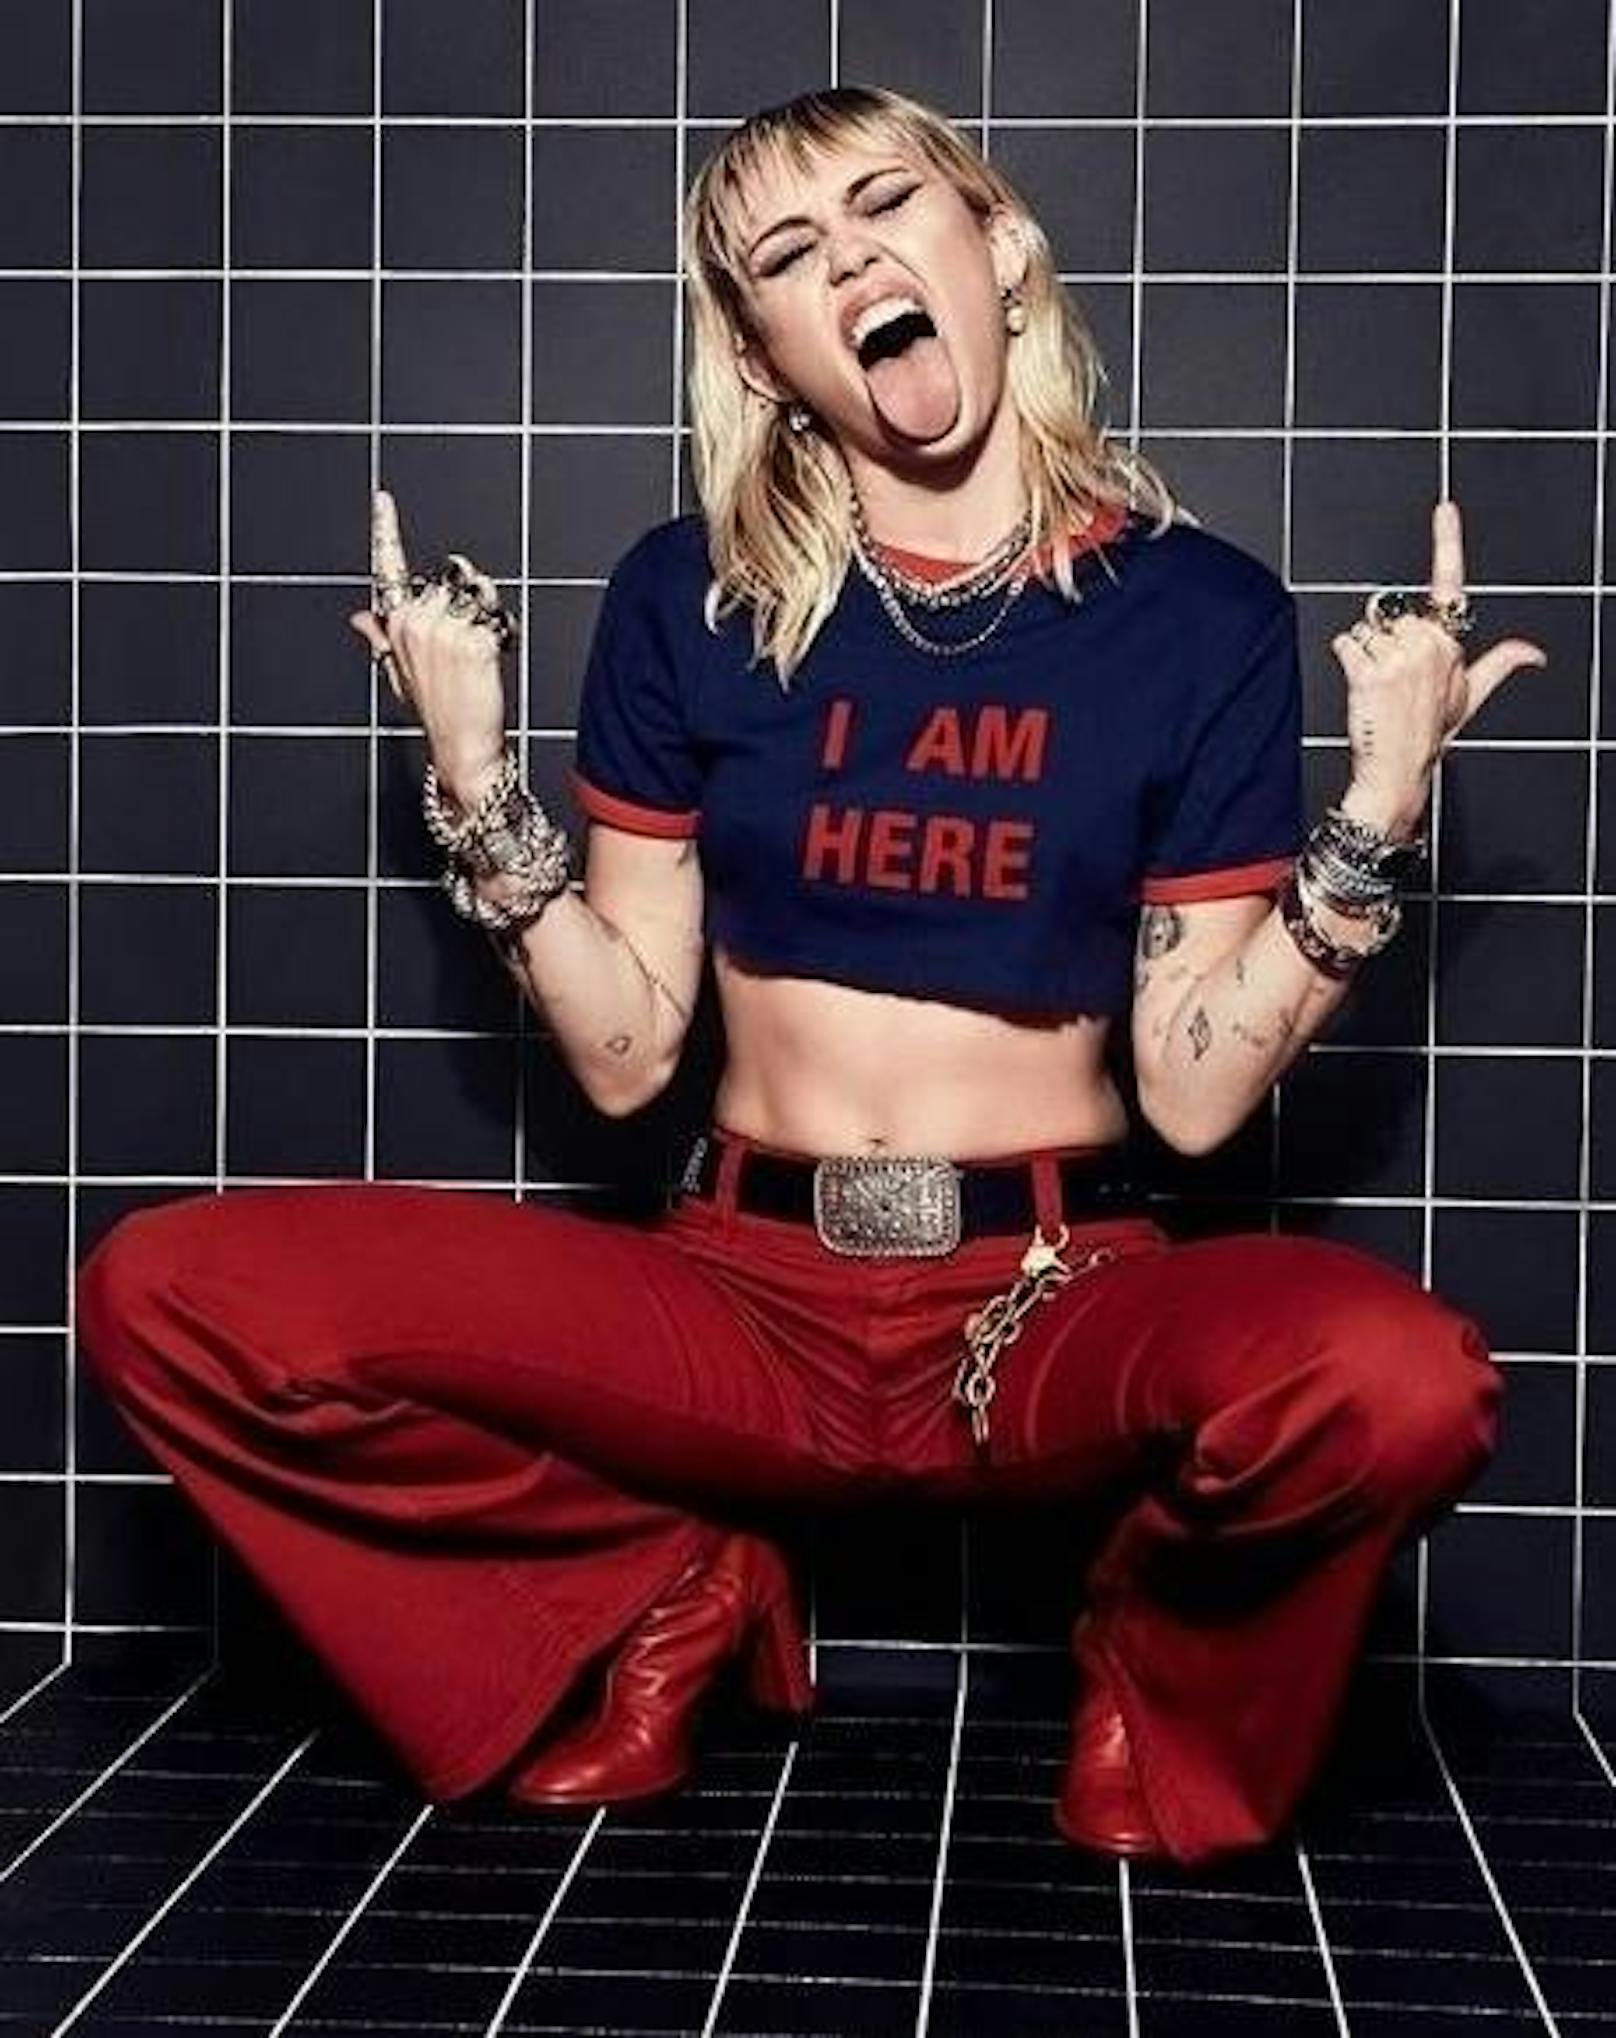 02.01.2020: "Neues Jahr. Neue Ära", verspricht Miley Cyrus ihren Fans mit einem Instagram-Schnappschuss, auf dem sie wieder einmal ihr Markenzeichen, ihre Zunge, so weit wie möglich rausstreckt.  